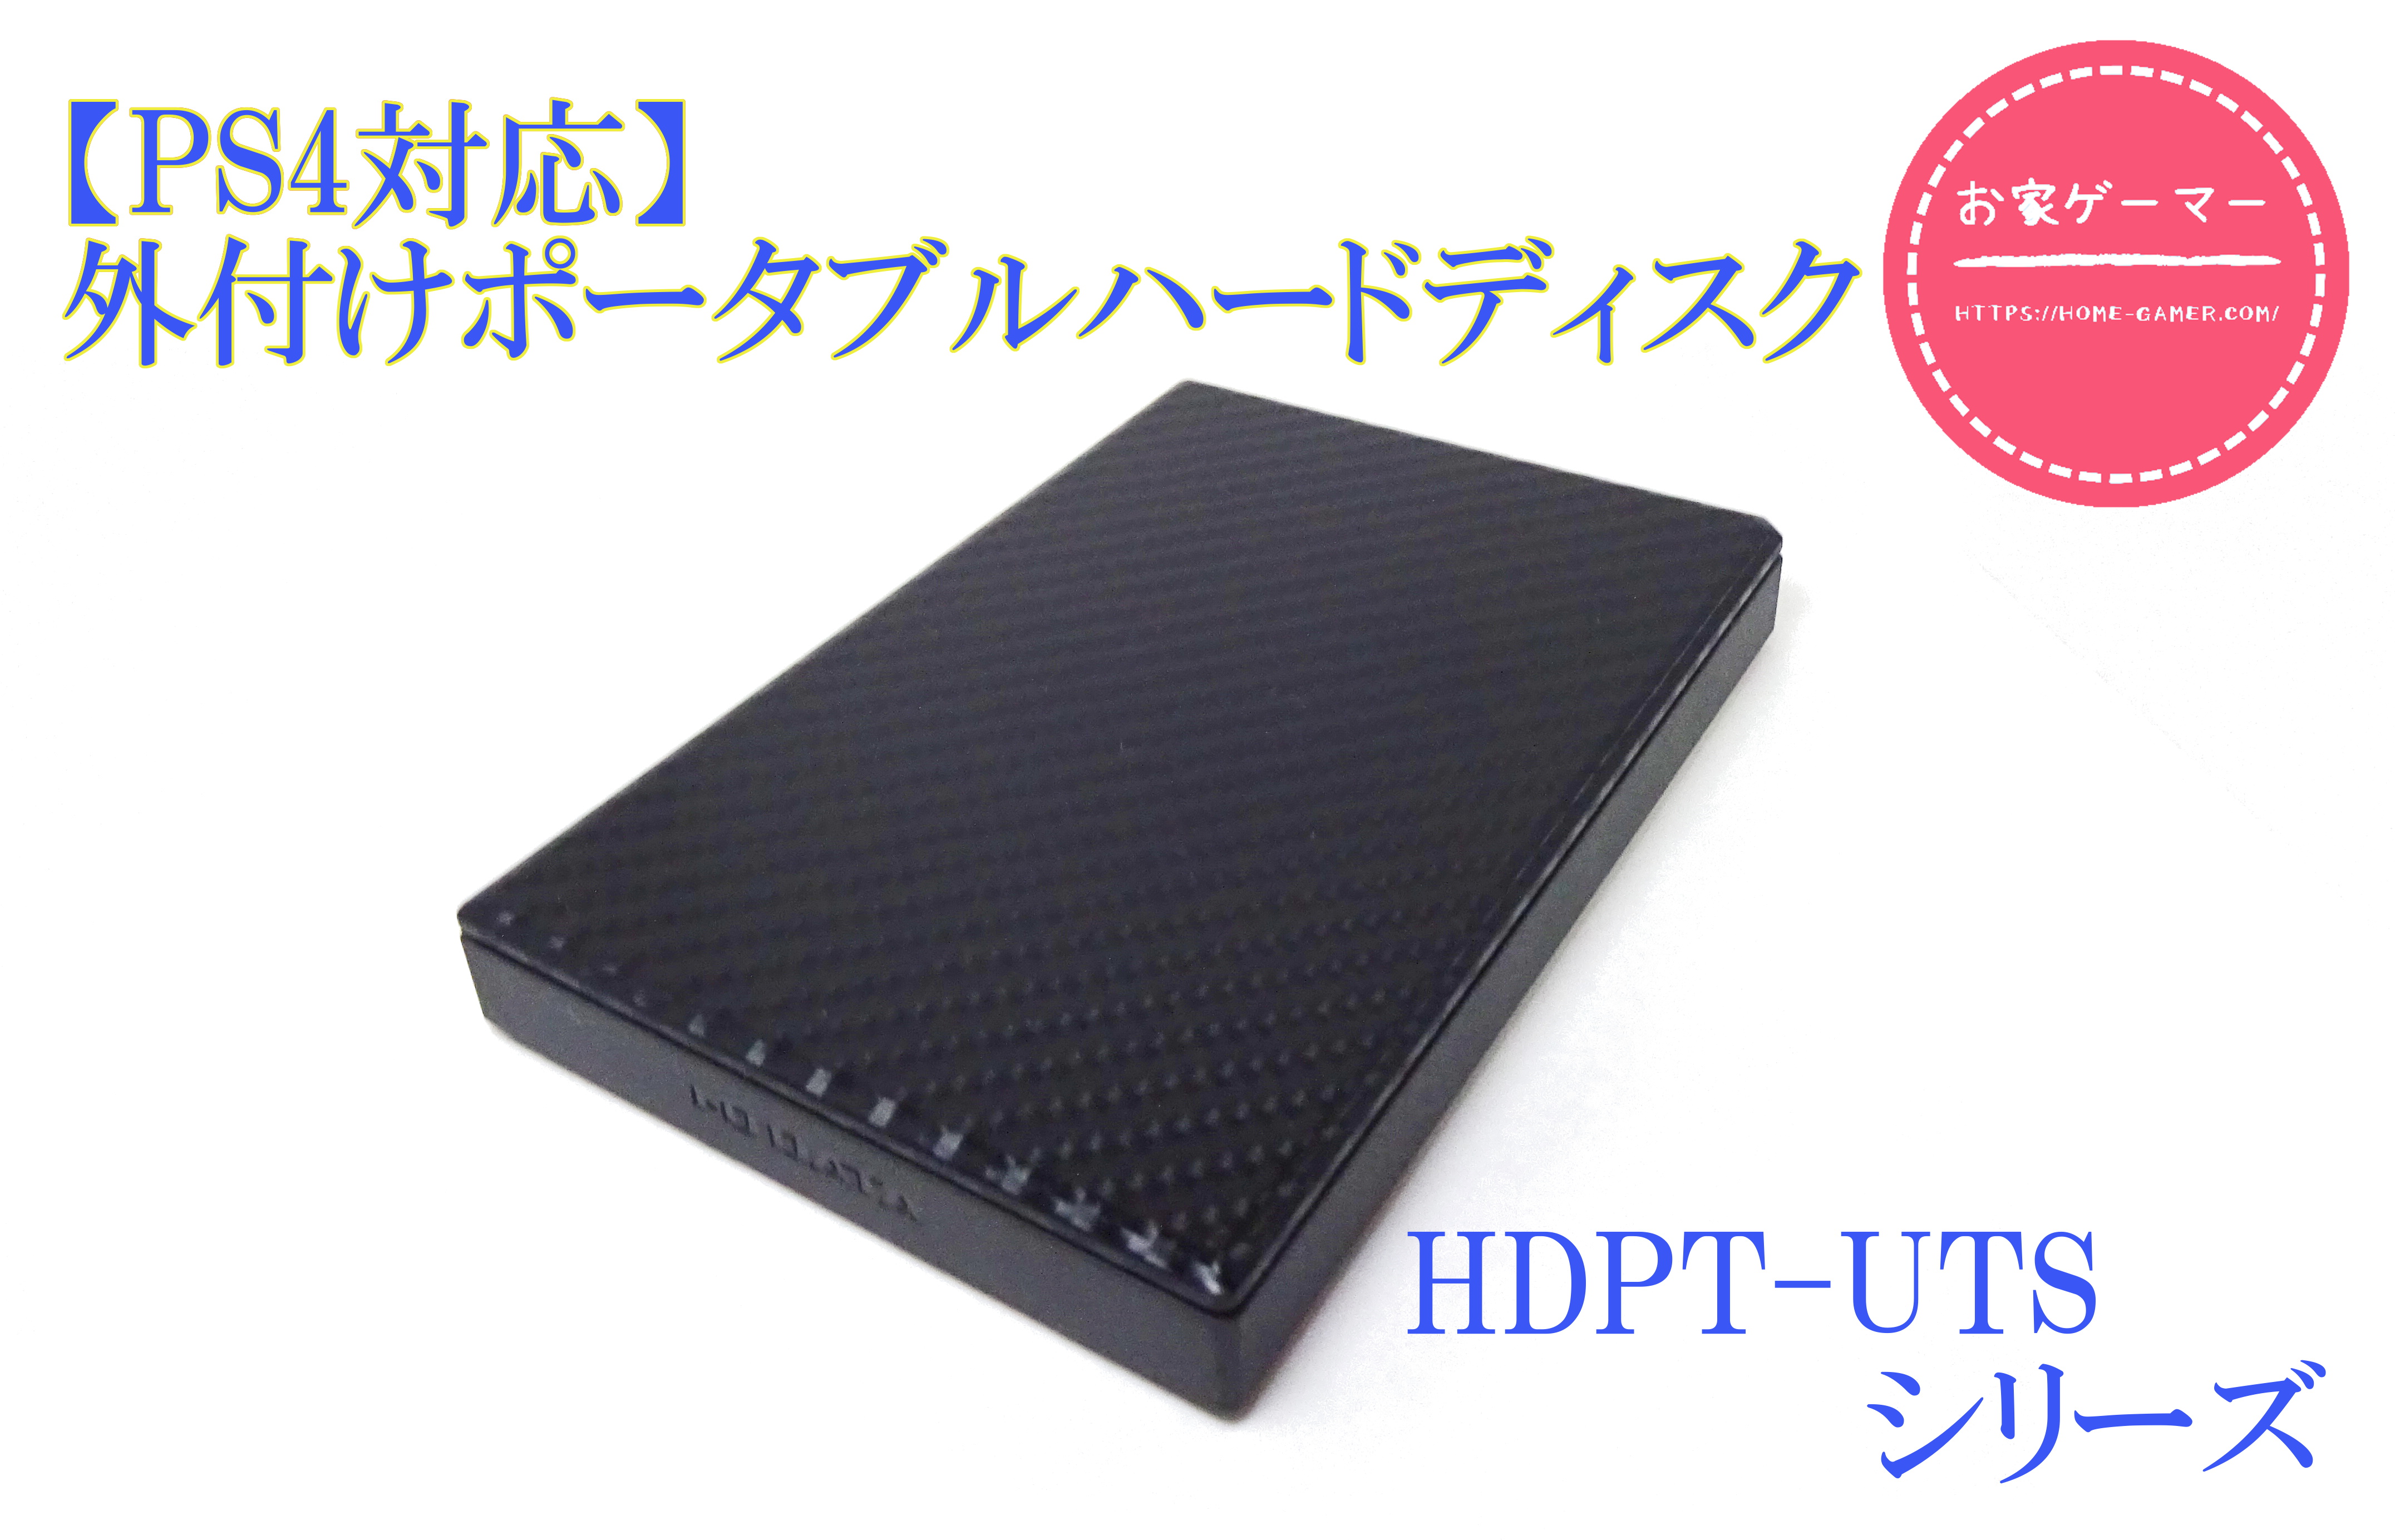 外付けポータブルハードディスク,HDPT-UTSシリーズ,レビュー